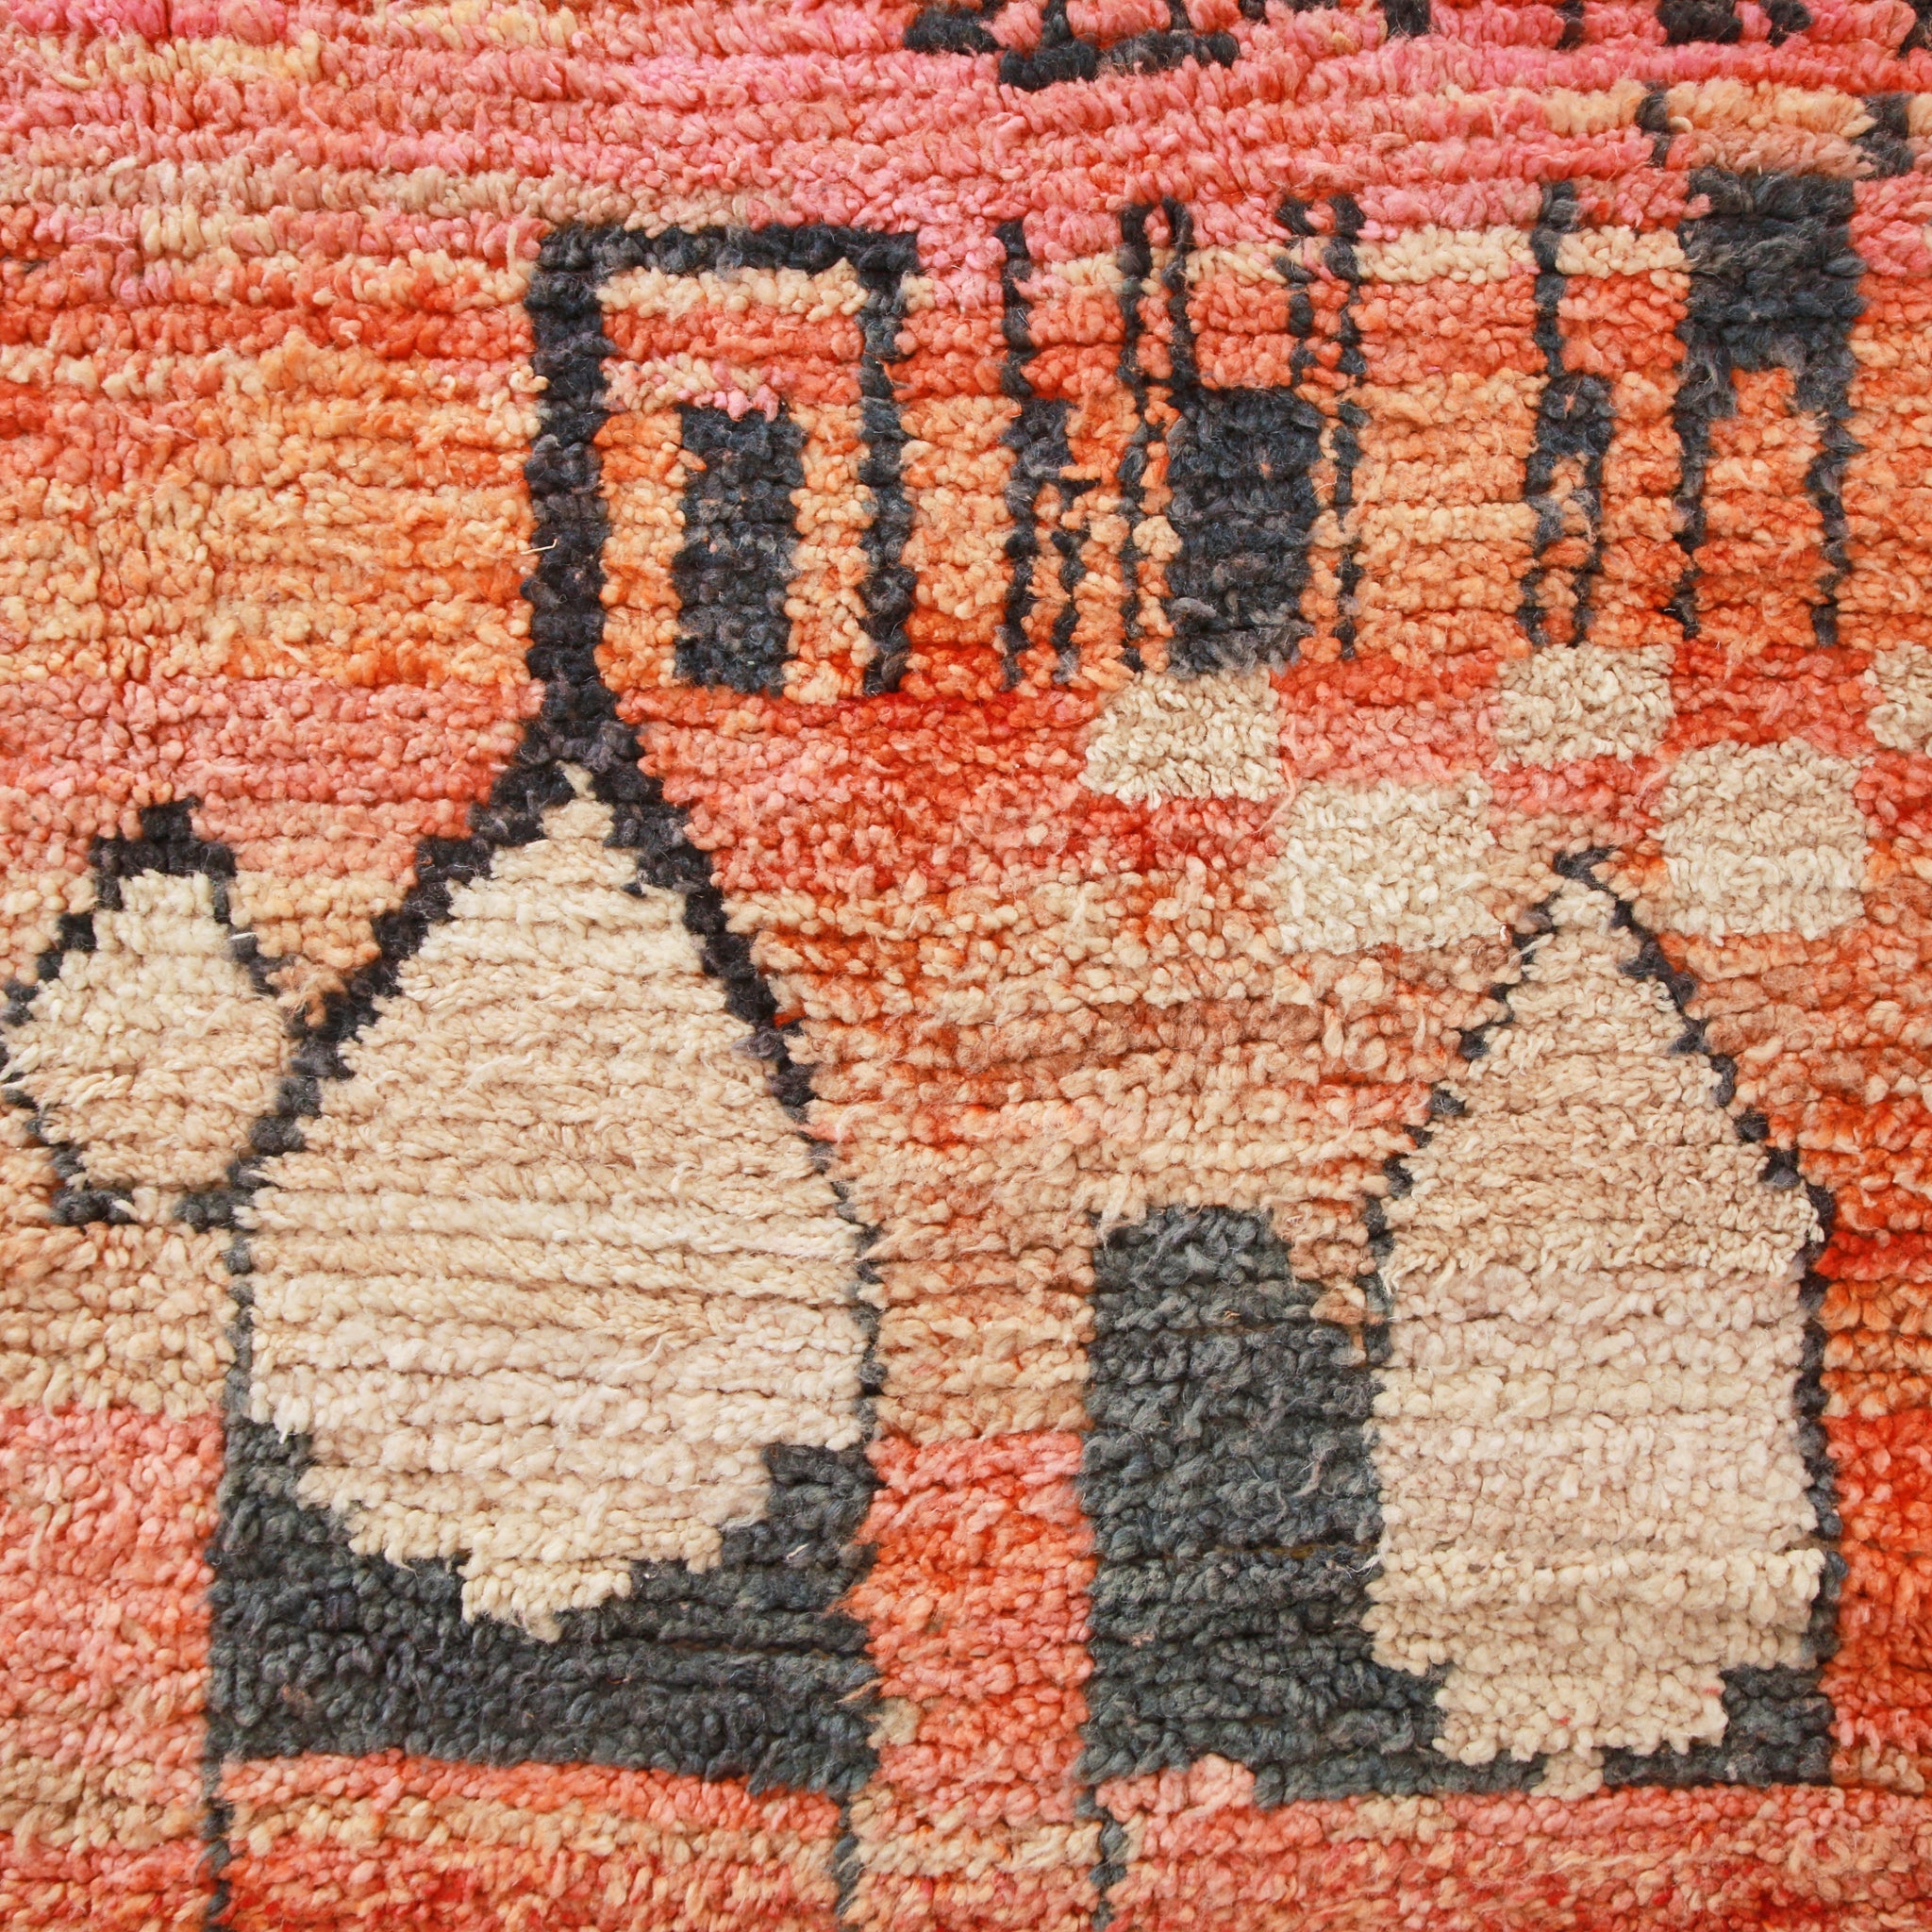 dettaglio del tappeto boujaad che mostra le immagini dei cammelli